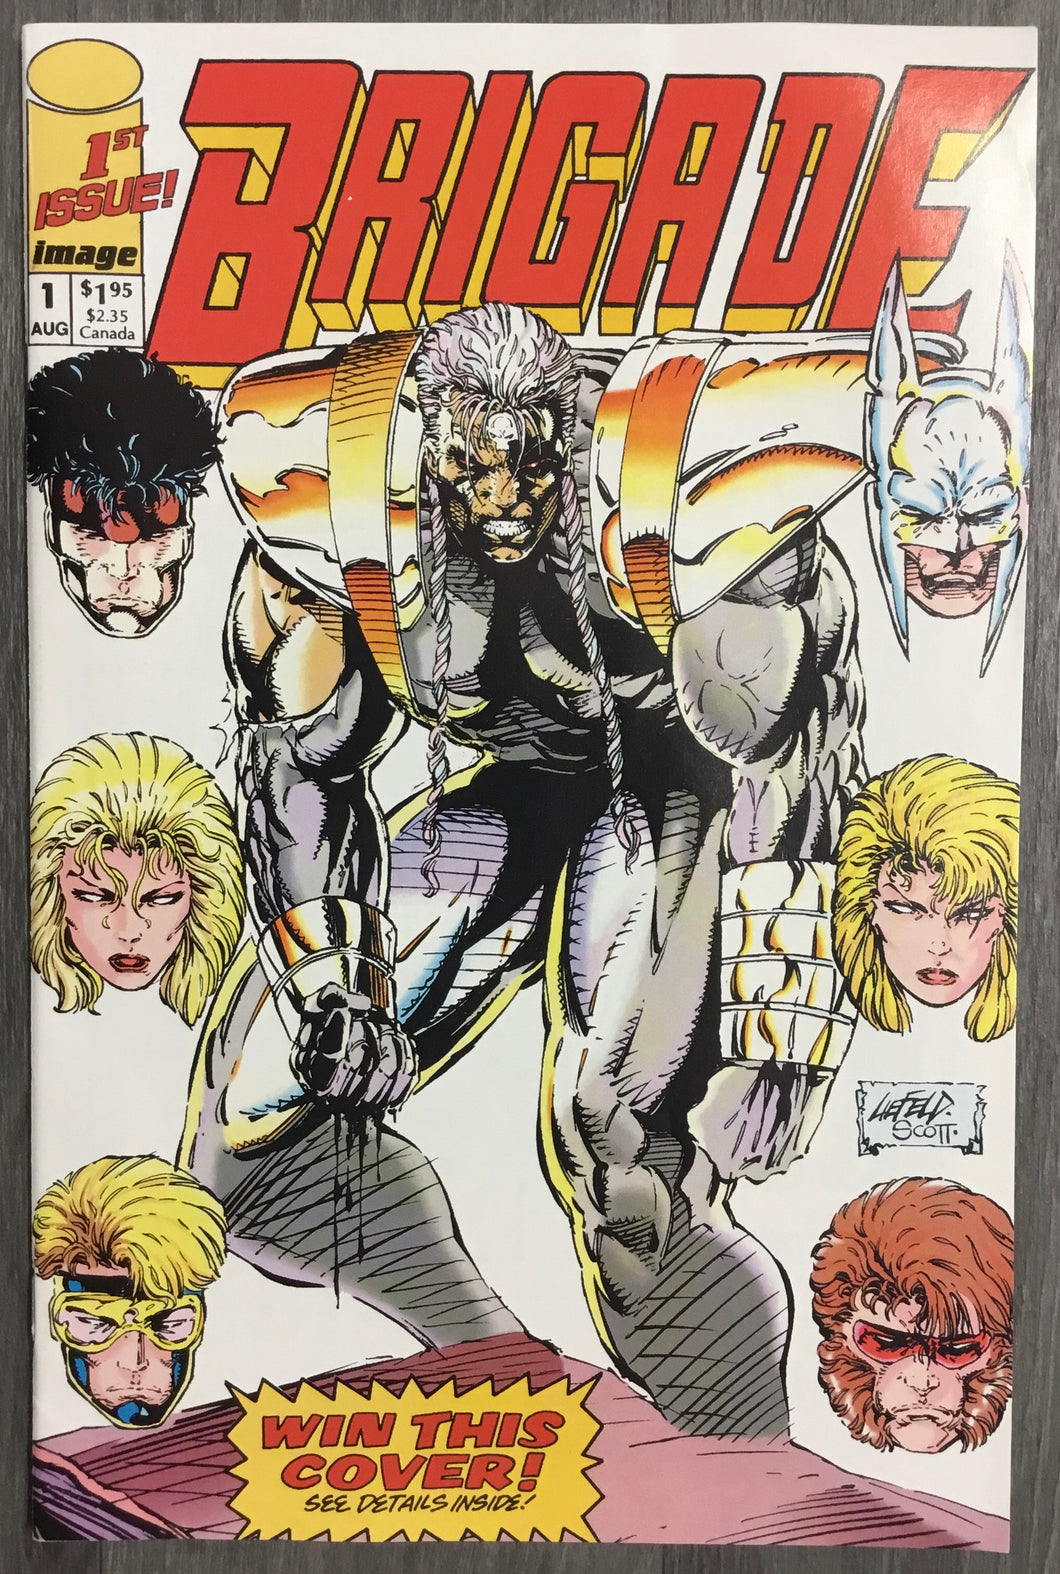 Brigade No. #1 1992 Image Comics